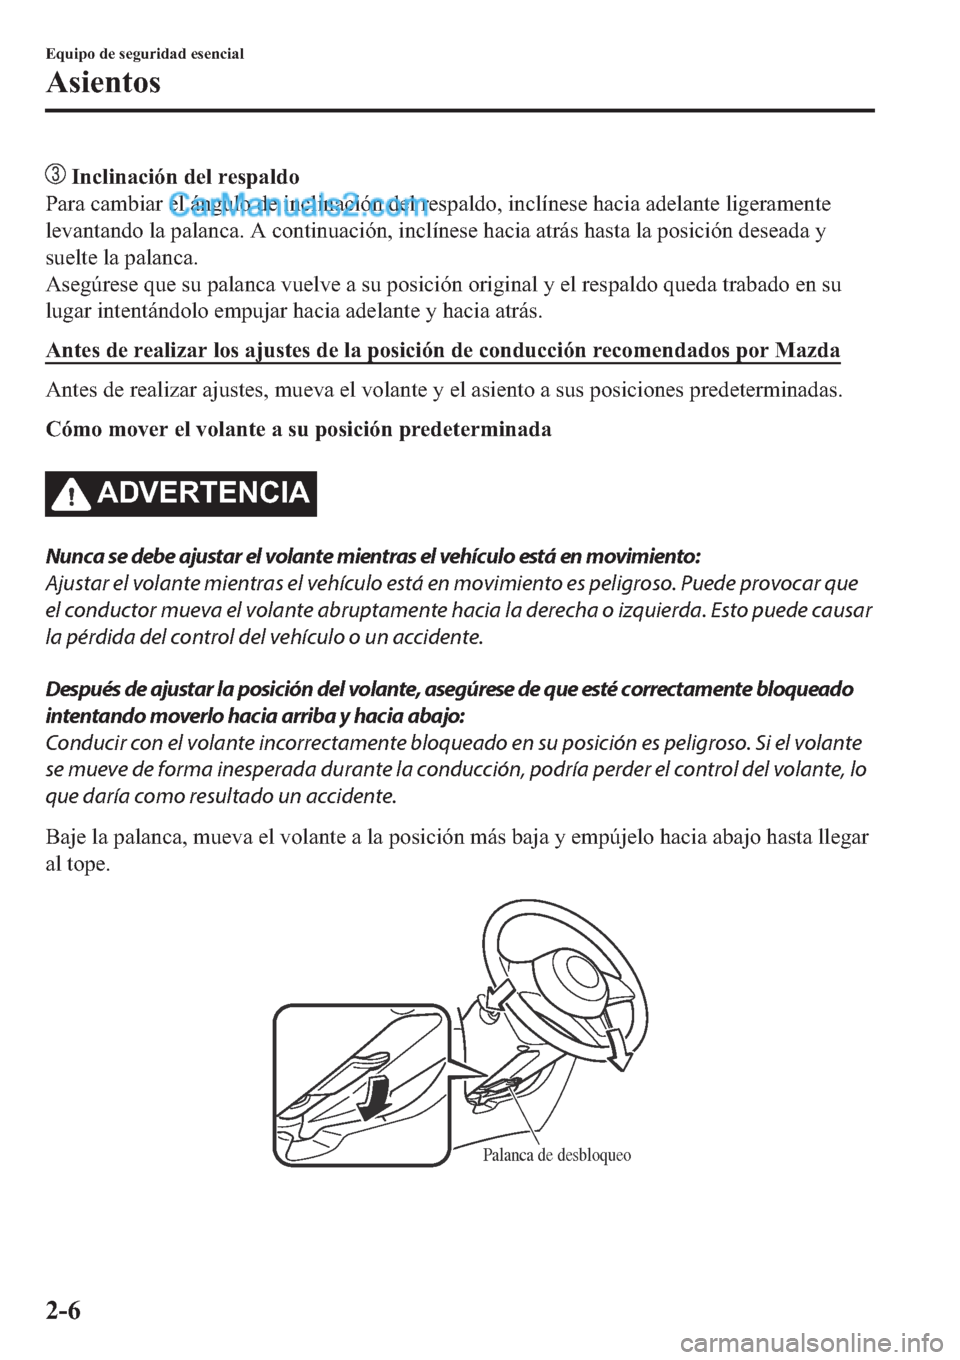 MAZDA MODEL 2 2019  Manual del propietario (in Spanish) ��,�Q�F�O�L�Q�D�F�L�y�Q��G�H�O��U�H�V�S�D�O�G�R
�3�D�U�D��F�D�P�E�L�D�U��H�O��i�Q�J�X�O�R��G�H��L�Q�F�O�L�Q�D�F�L�y�Q��G�H�O��U�H�V�S�D�O�G�R���L�Q�F�O�t�Q�H�V�H��K�D�F�L�D��D�G�H�O�D�Q�